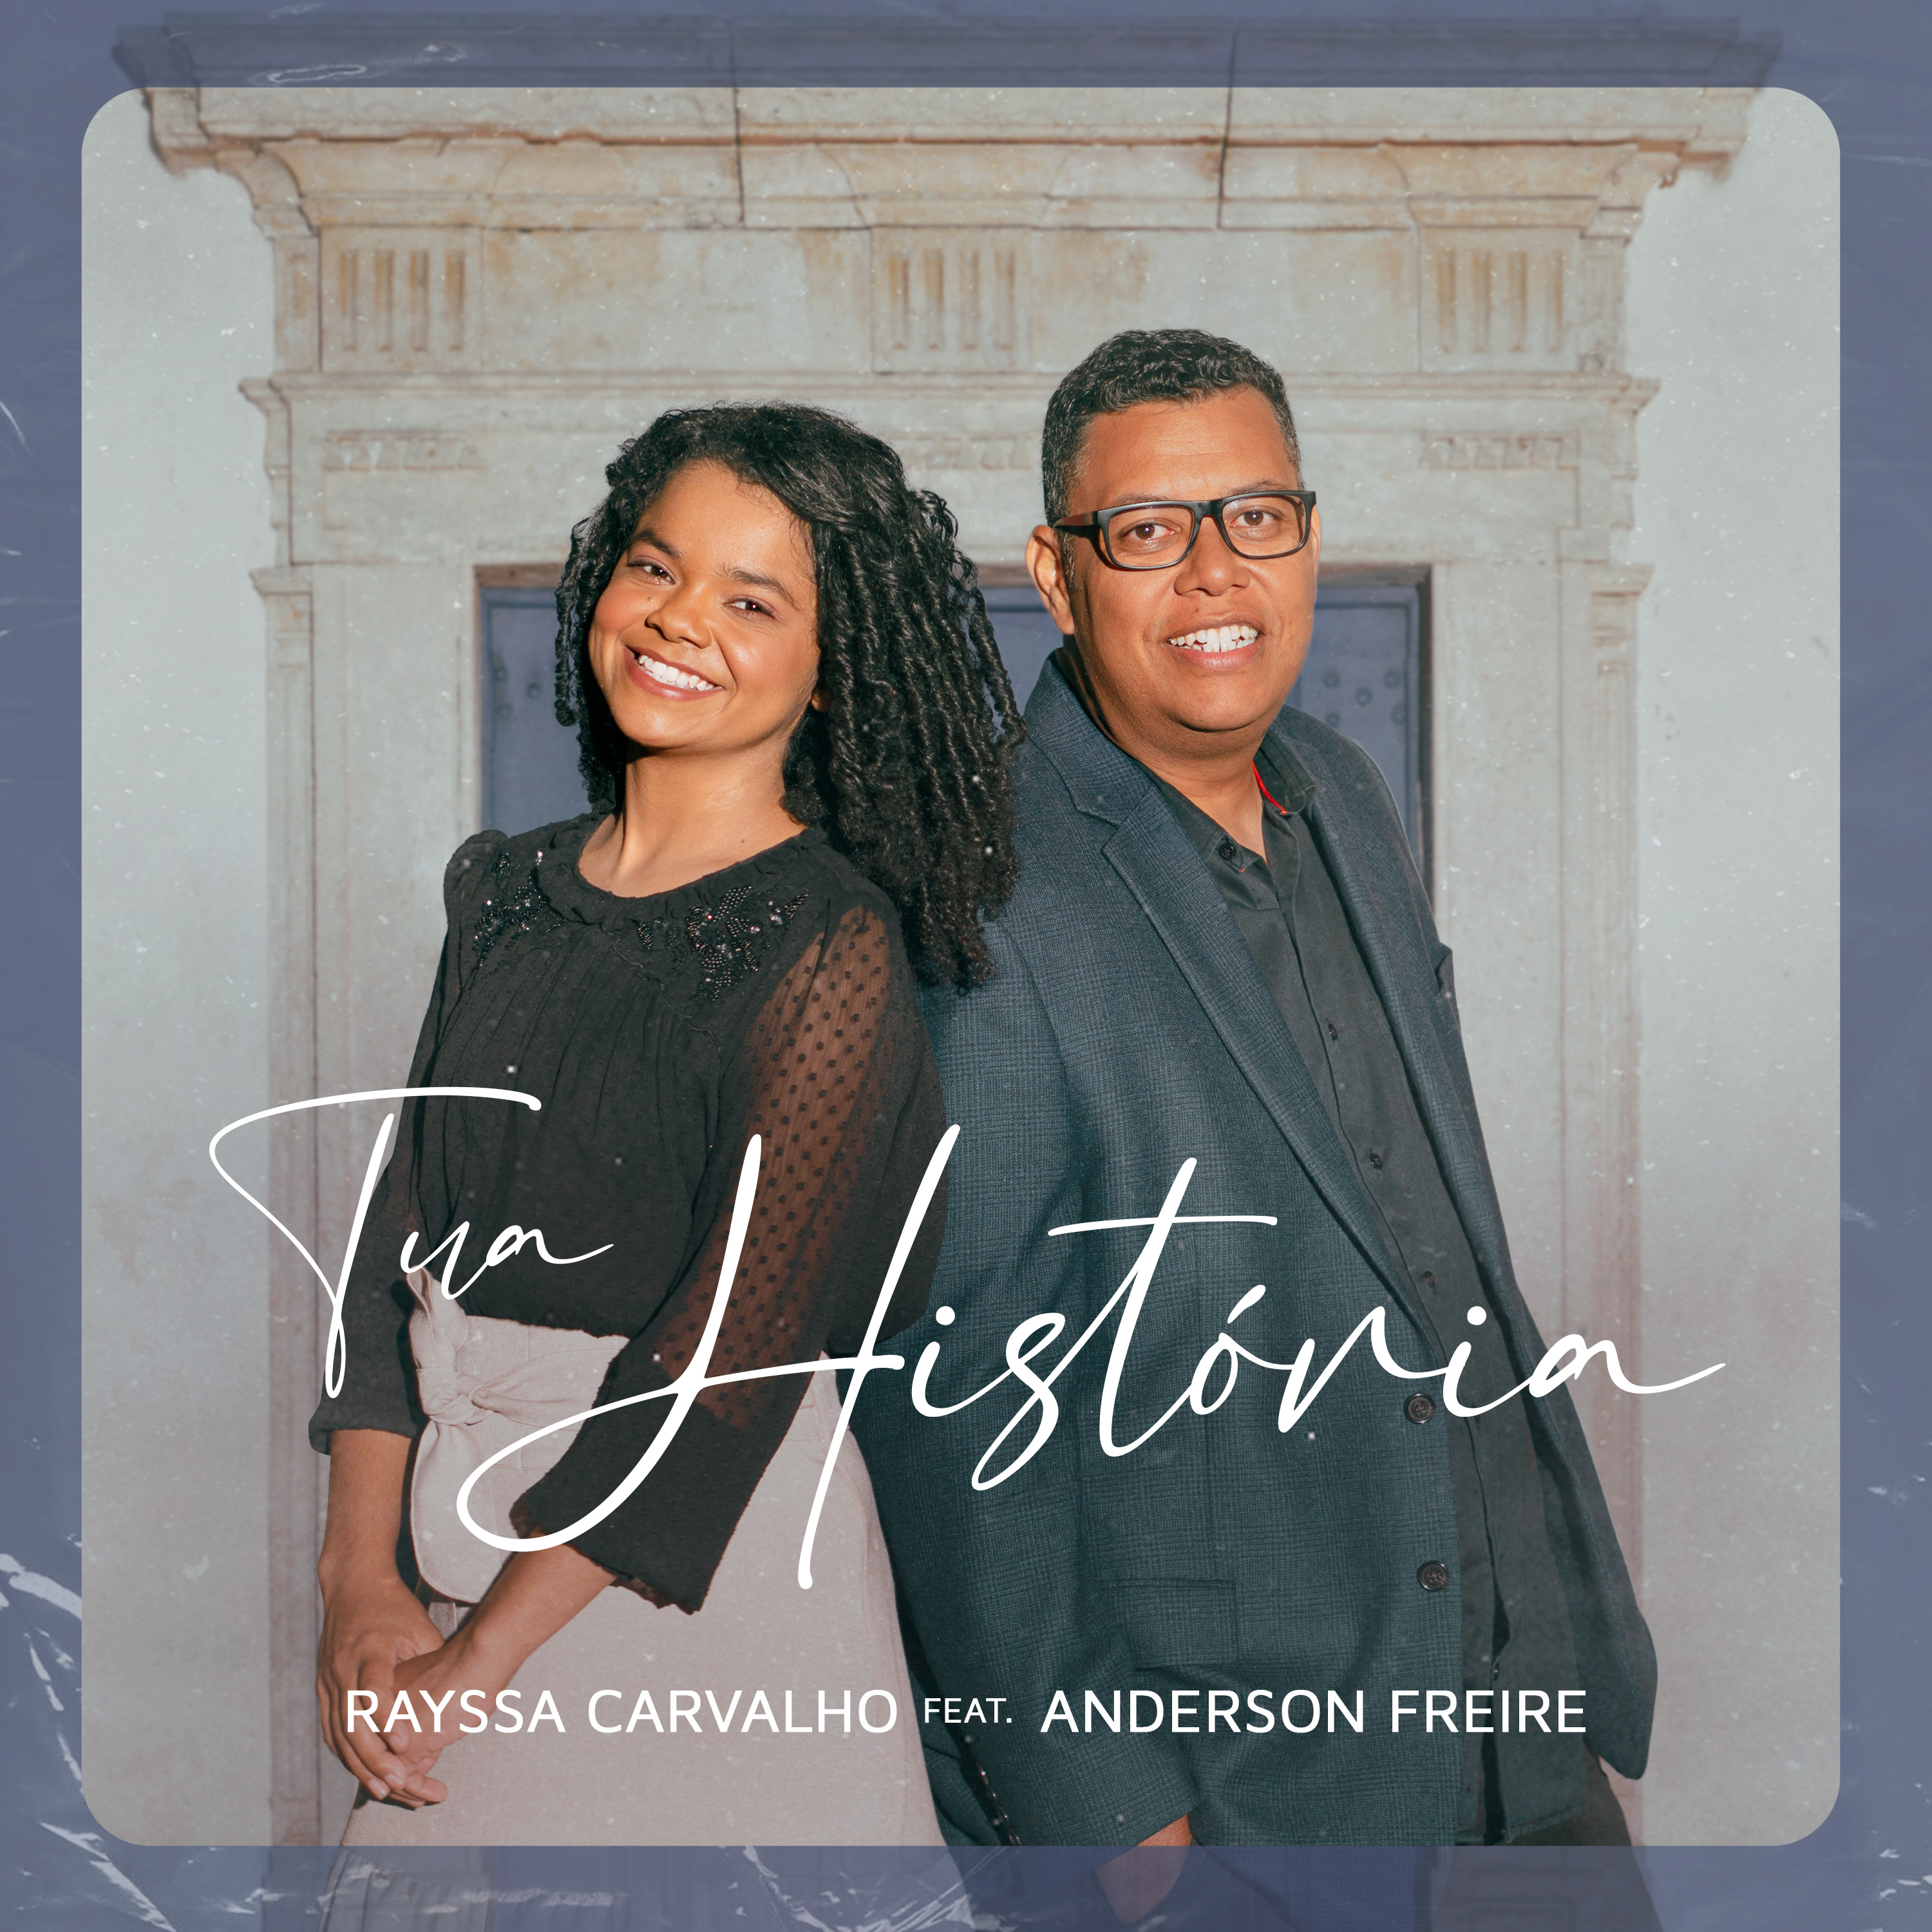 Rayssa Carvalho feat. Anderson Freire em “Tua História”